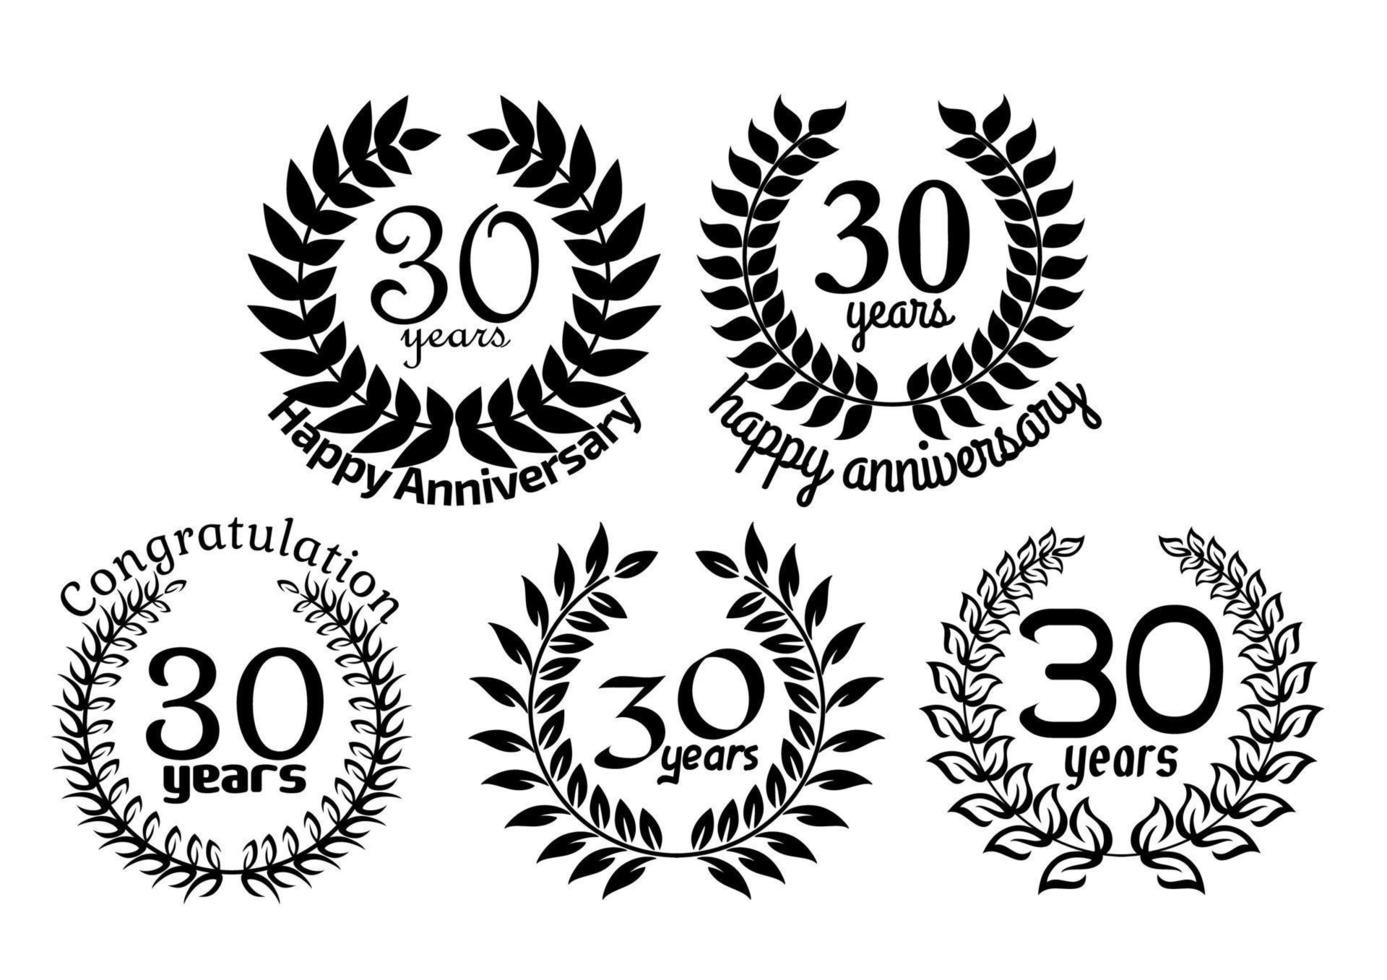 aniversario coronas de laurel 30 años vector